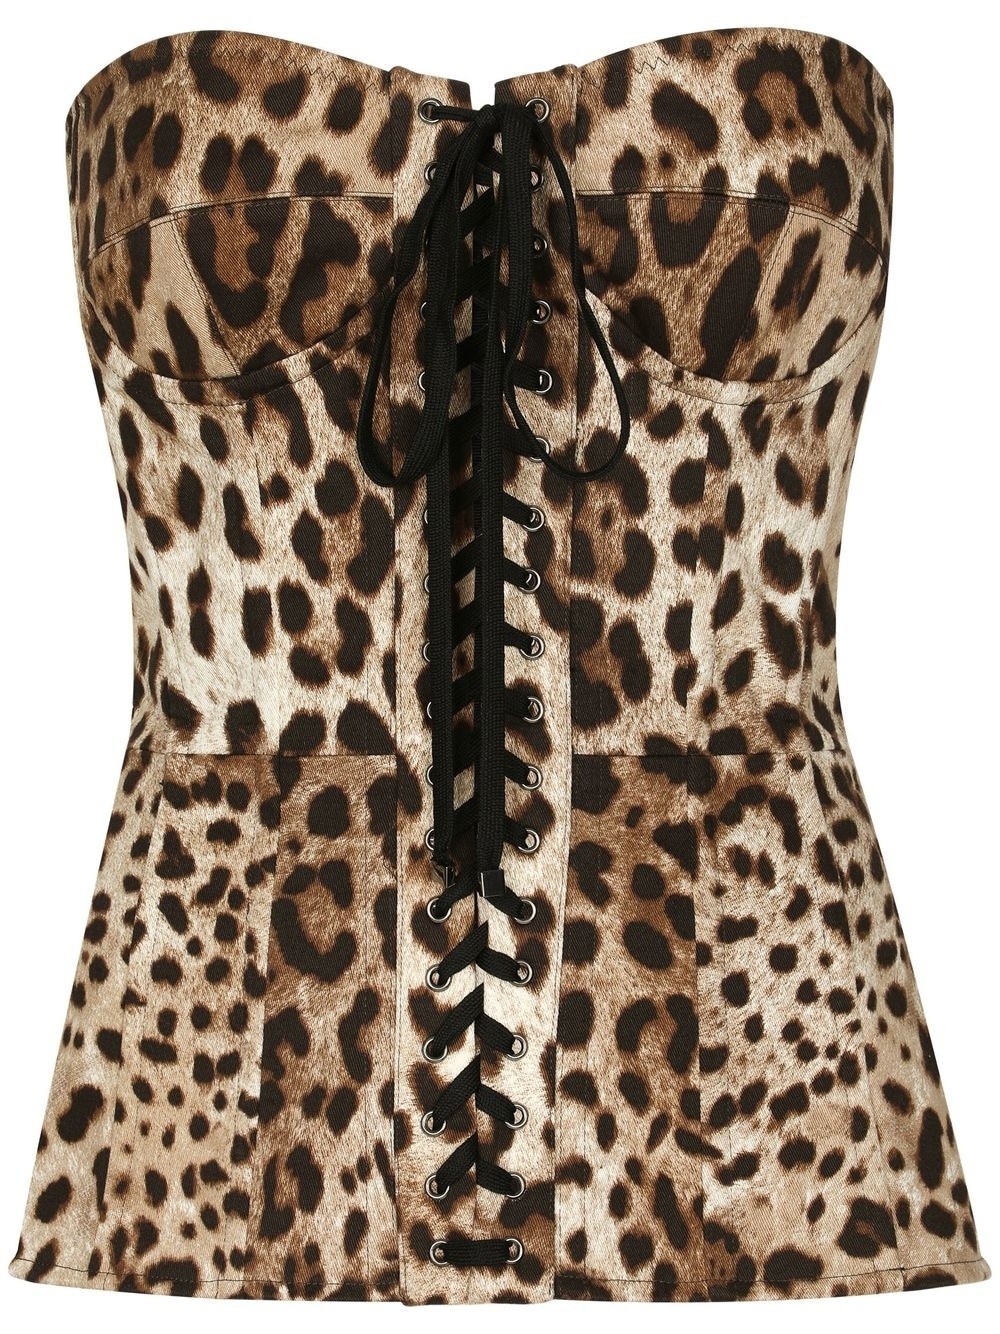 leopard-print lace-up corset - 1